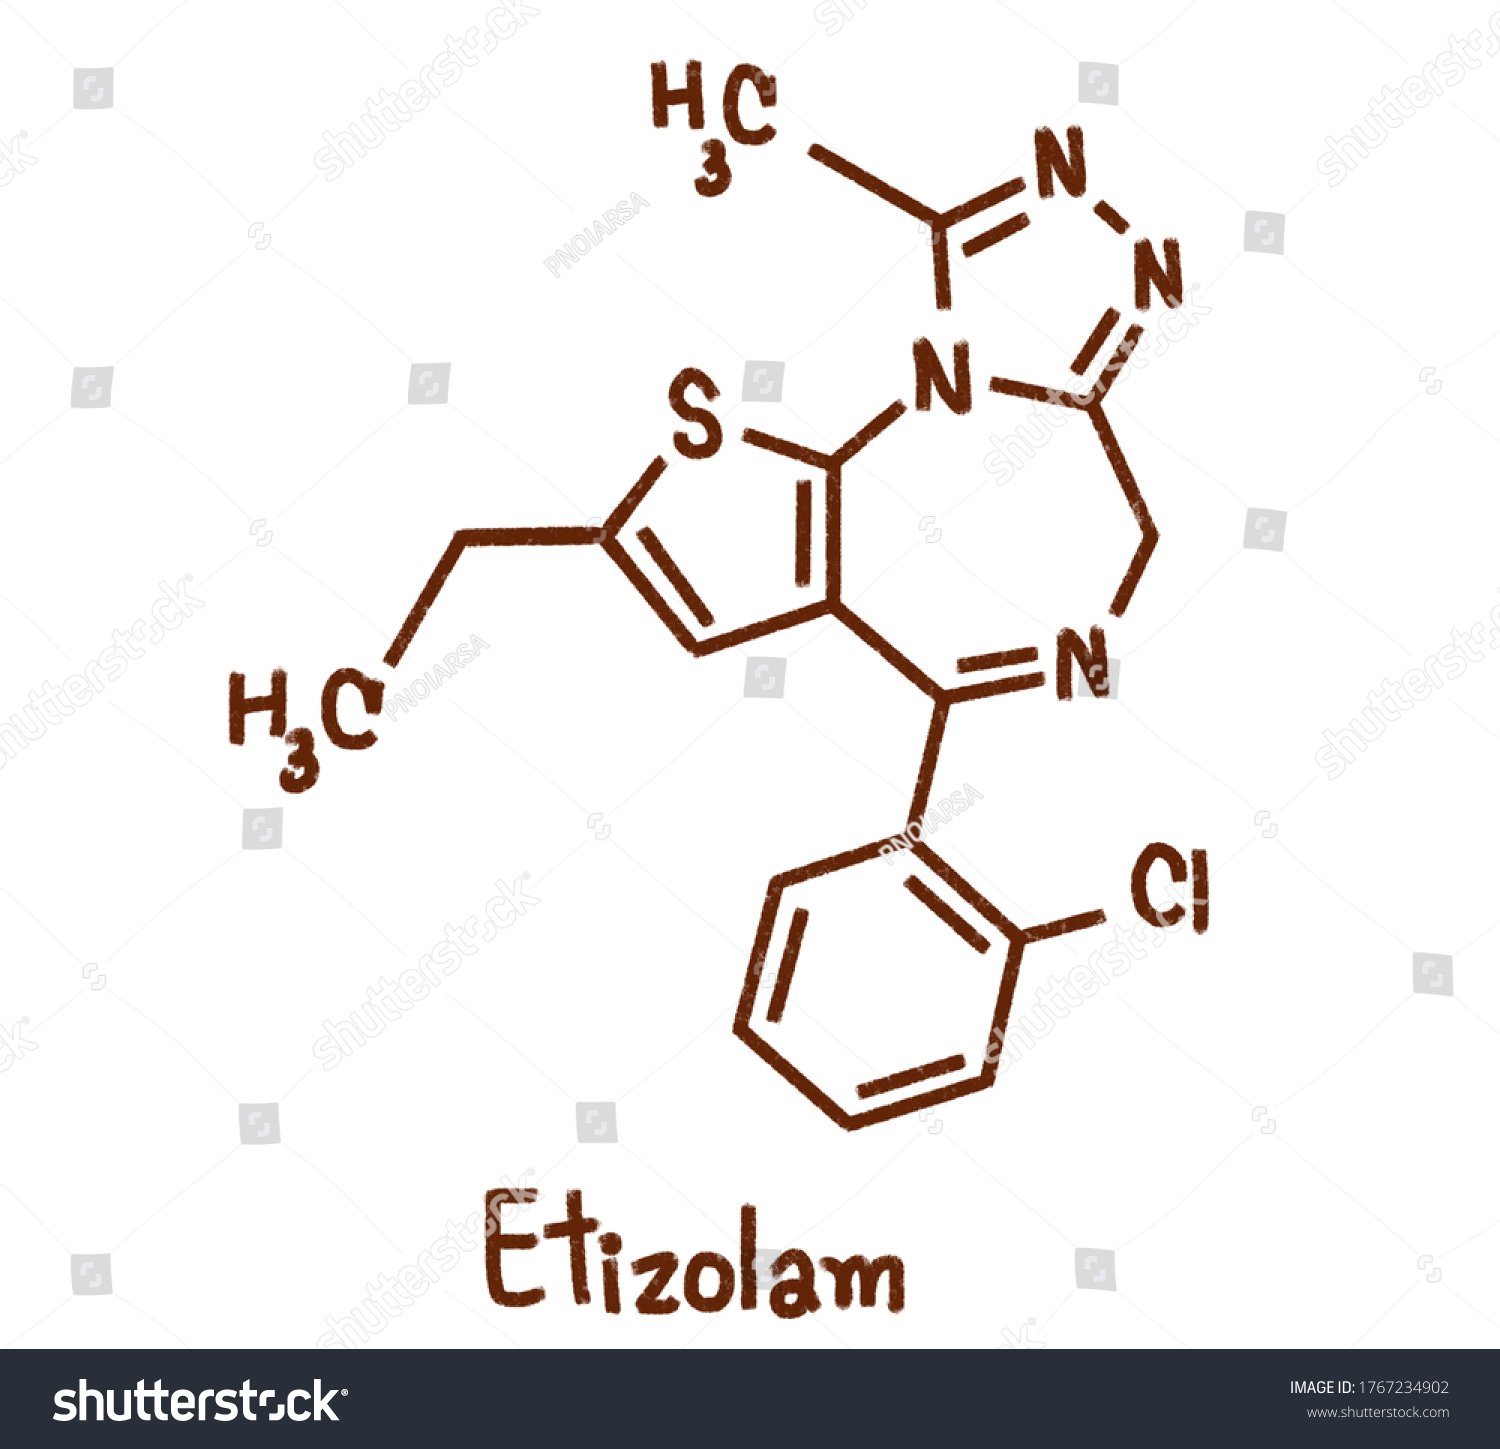 エチゾラムはベンゾジアゼピン z 薬物クラスと化学的に関連するチエノジアゼピンである チオフェン環に置換されたベンゼン環を有するbdzとは異なる のイラスト素材